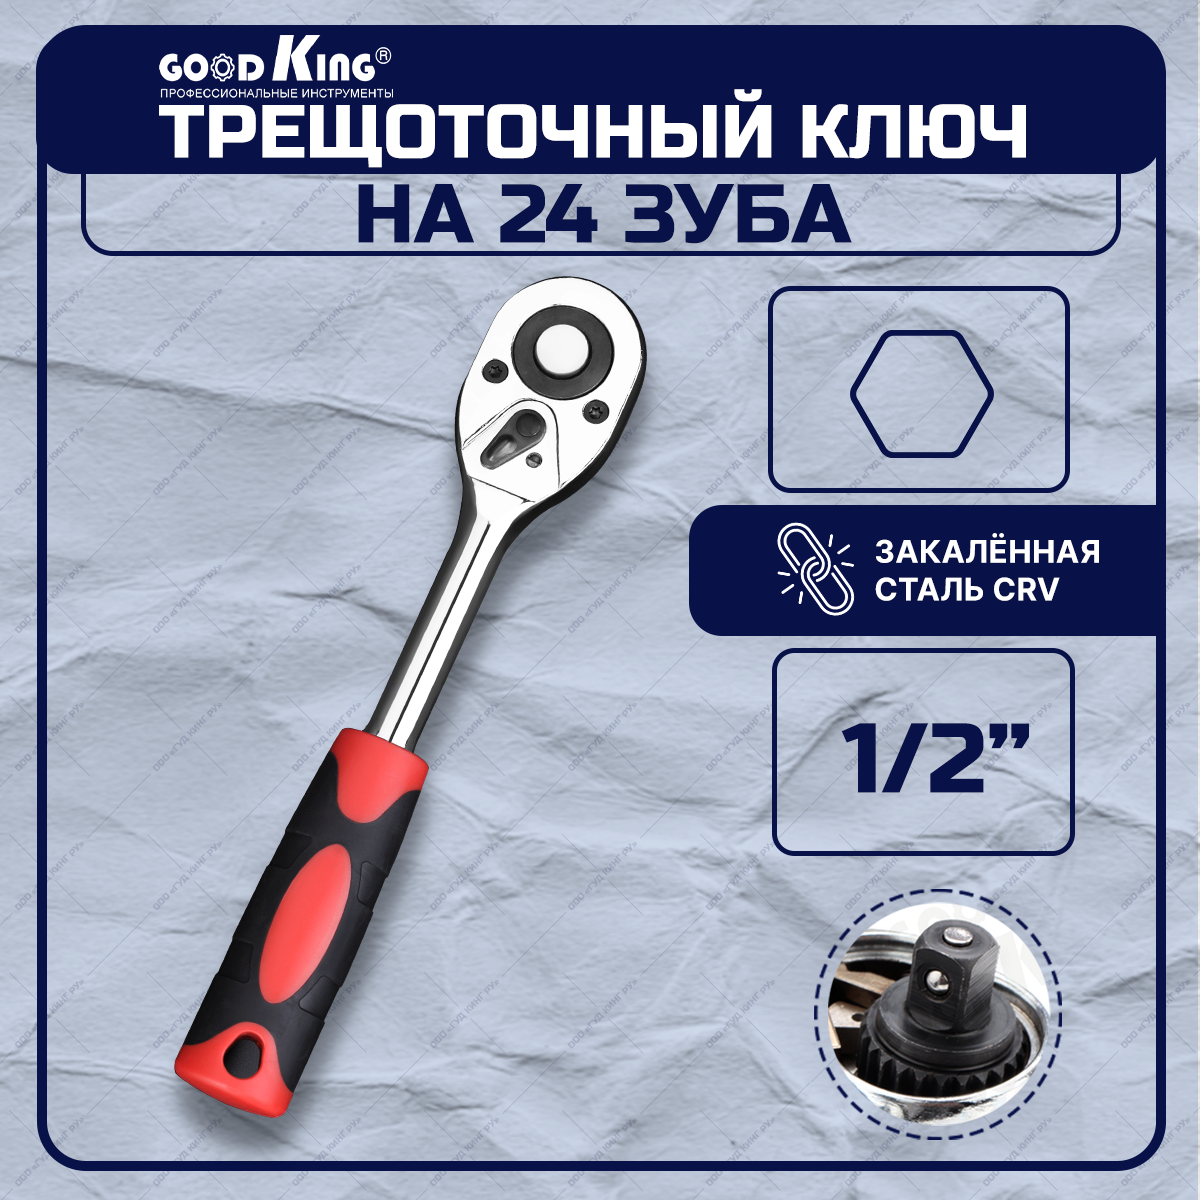 Трещотка 1/2" 24 зубца GOODKING GKRT-101224 трещоточный ключ для авто для ремонта